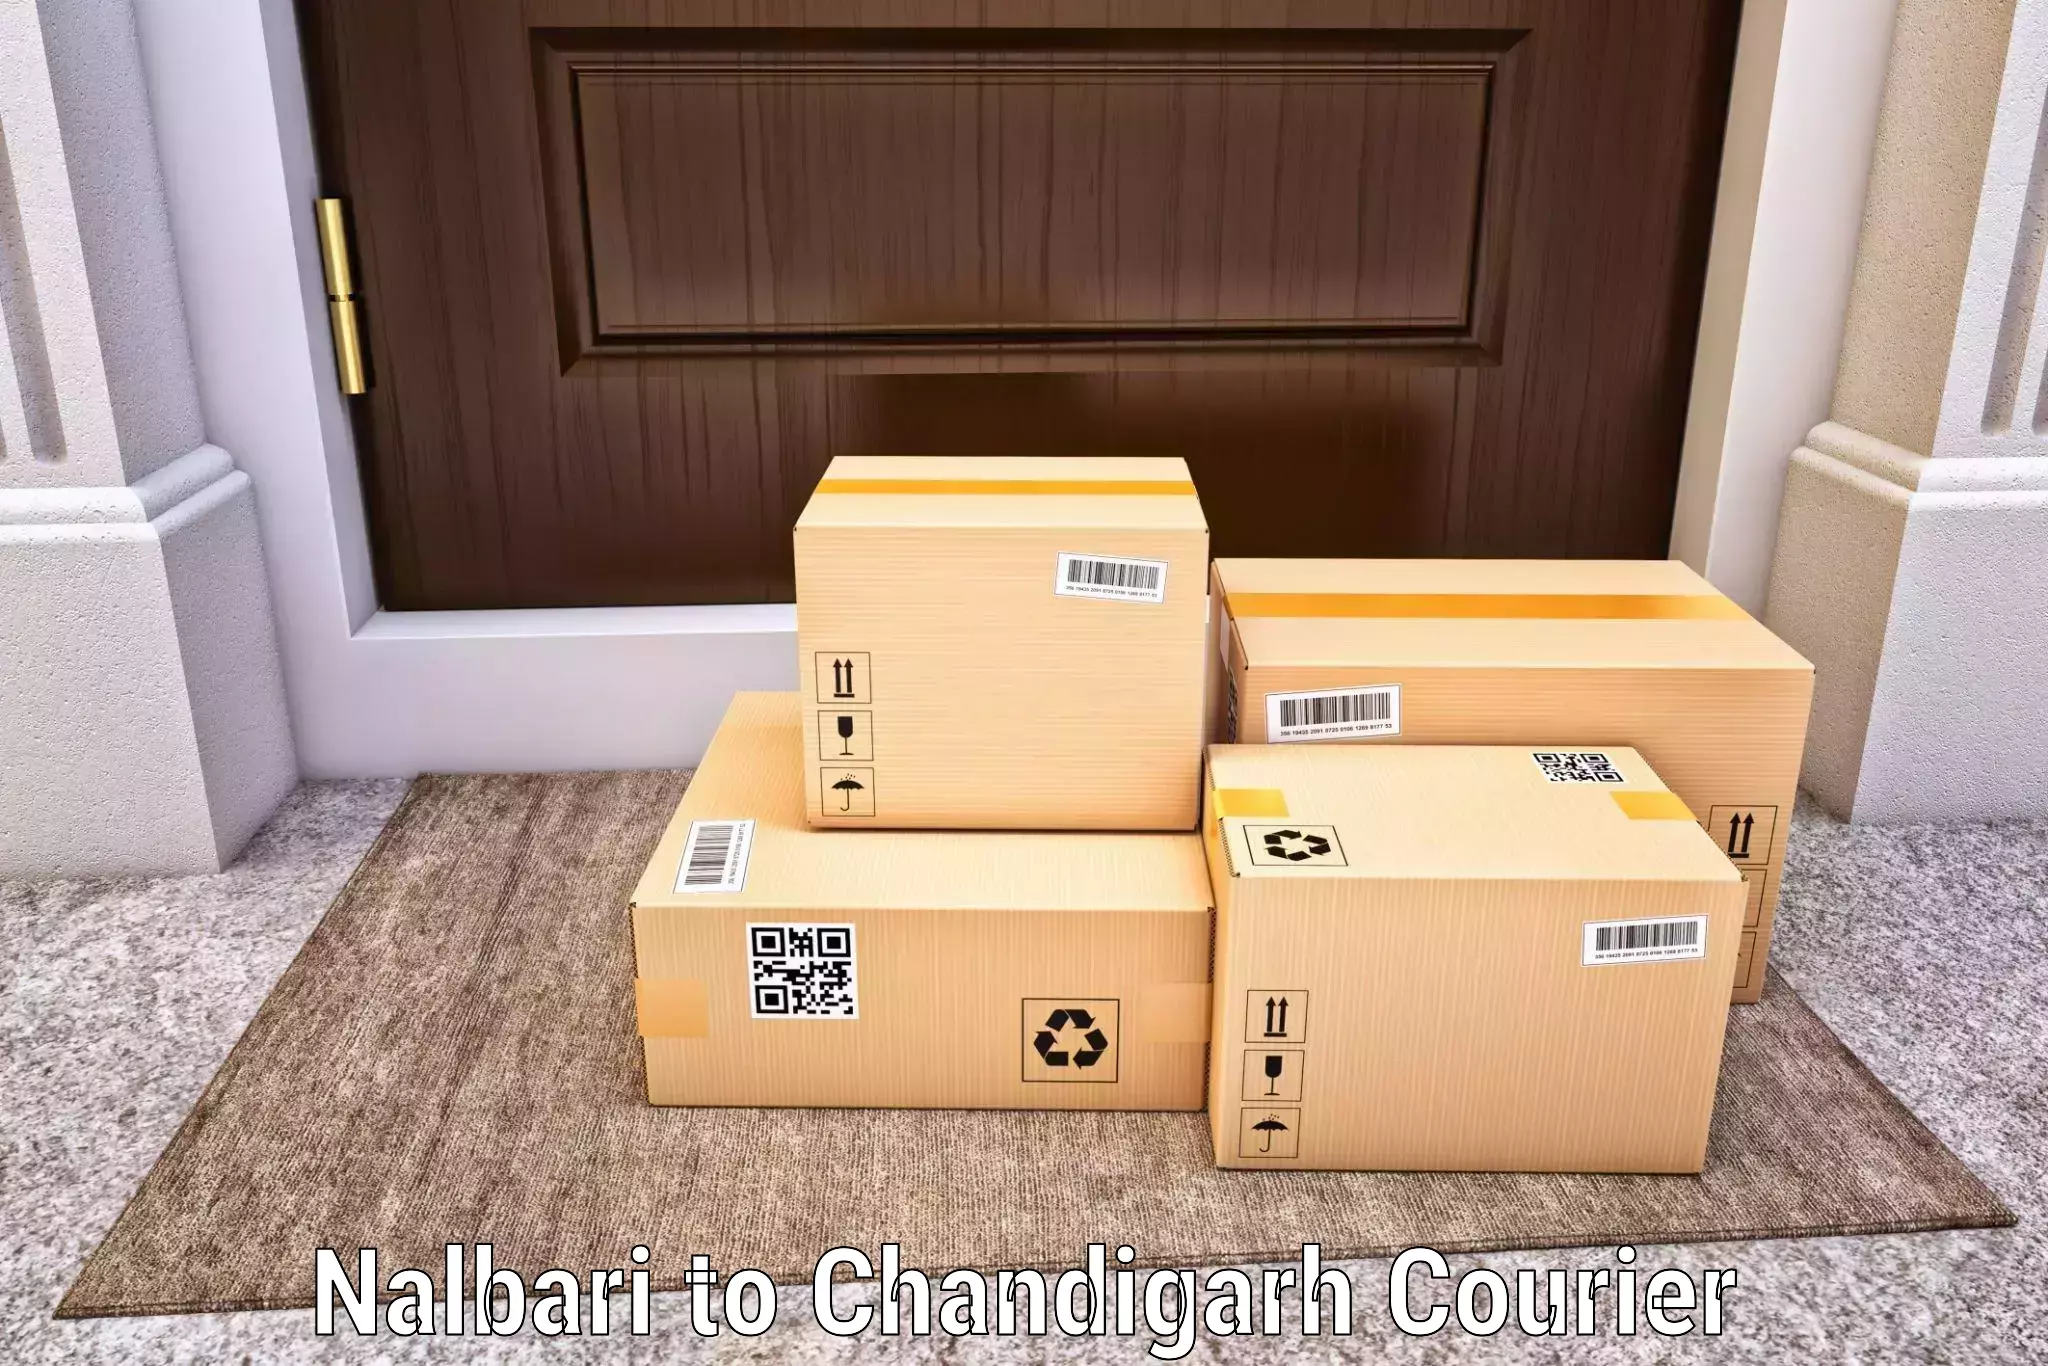 Nationwide delivery network Nalbari to Chandigarh